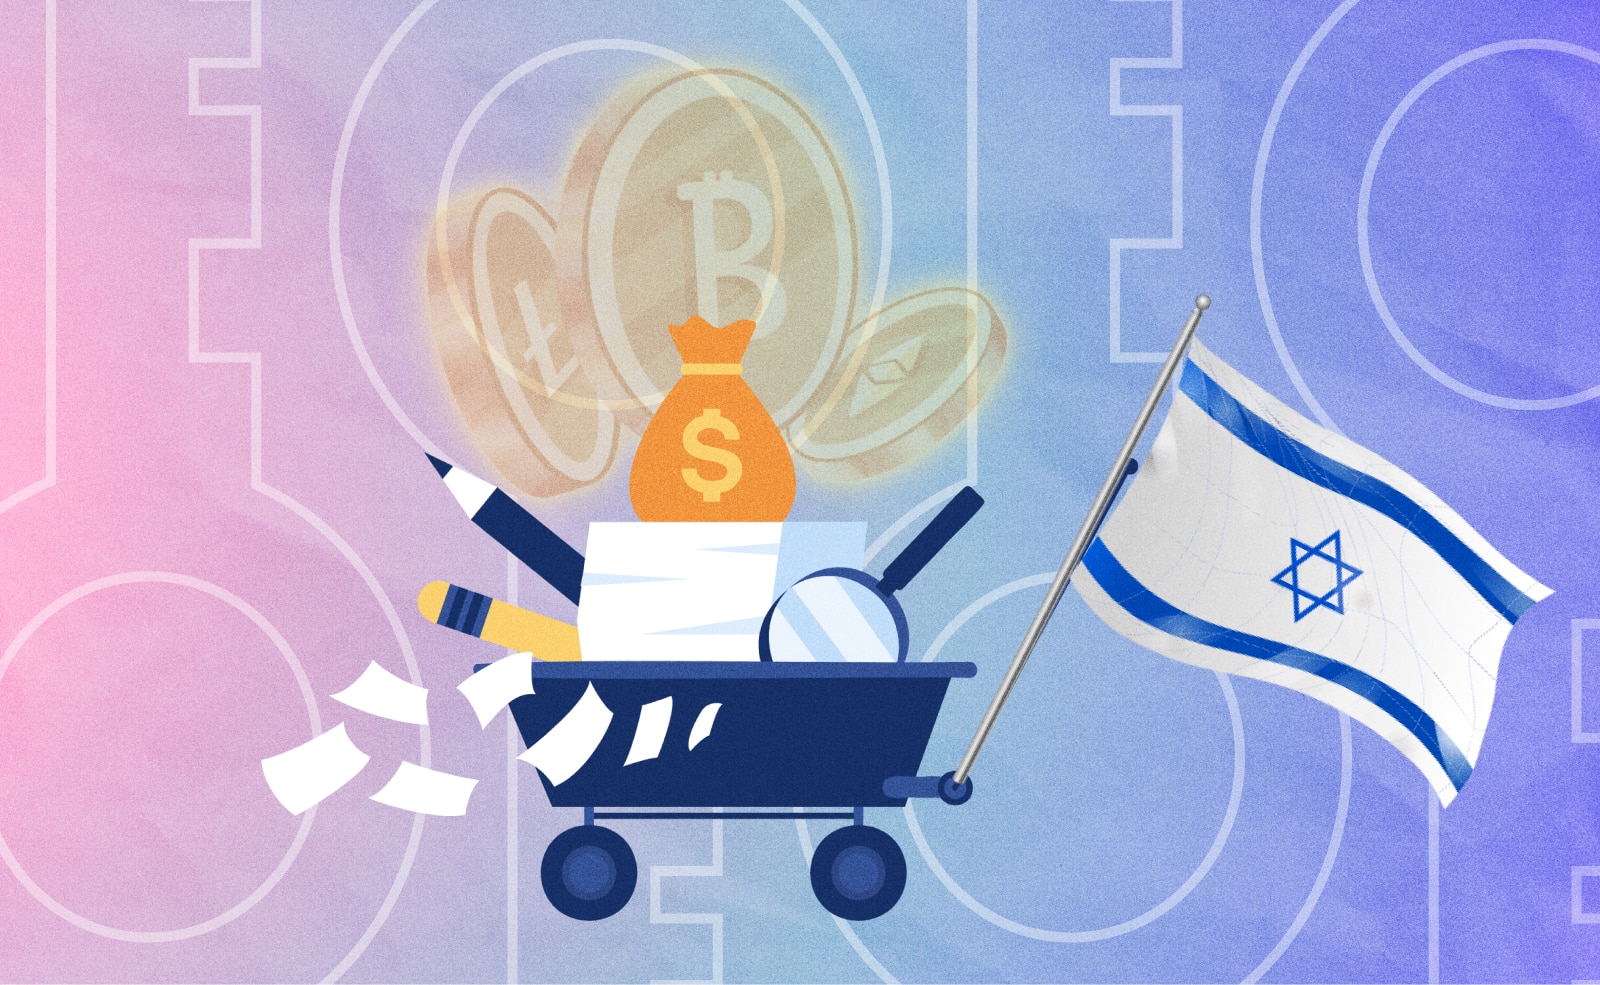 Магистратский суд Тель-Авива вынес решение, позволяющее правительству Израиля конфисковать криптовалюты из кошельков, занесенных в черный список.